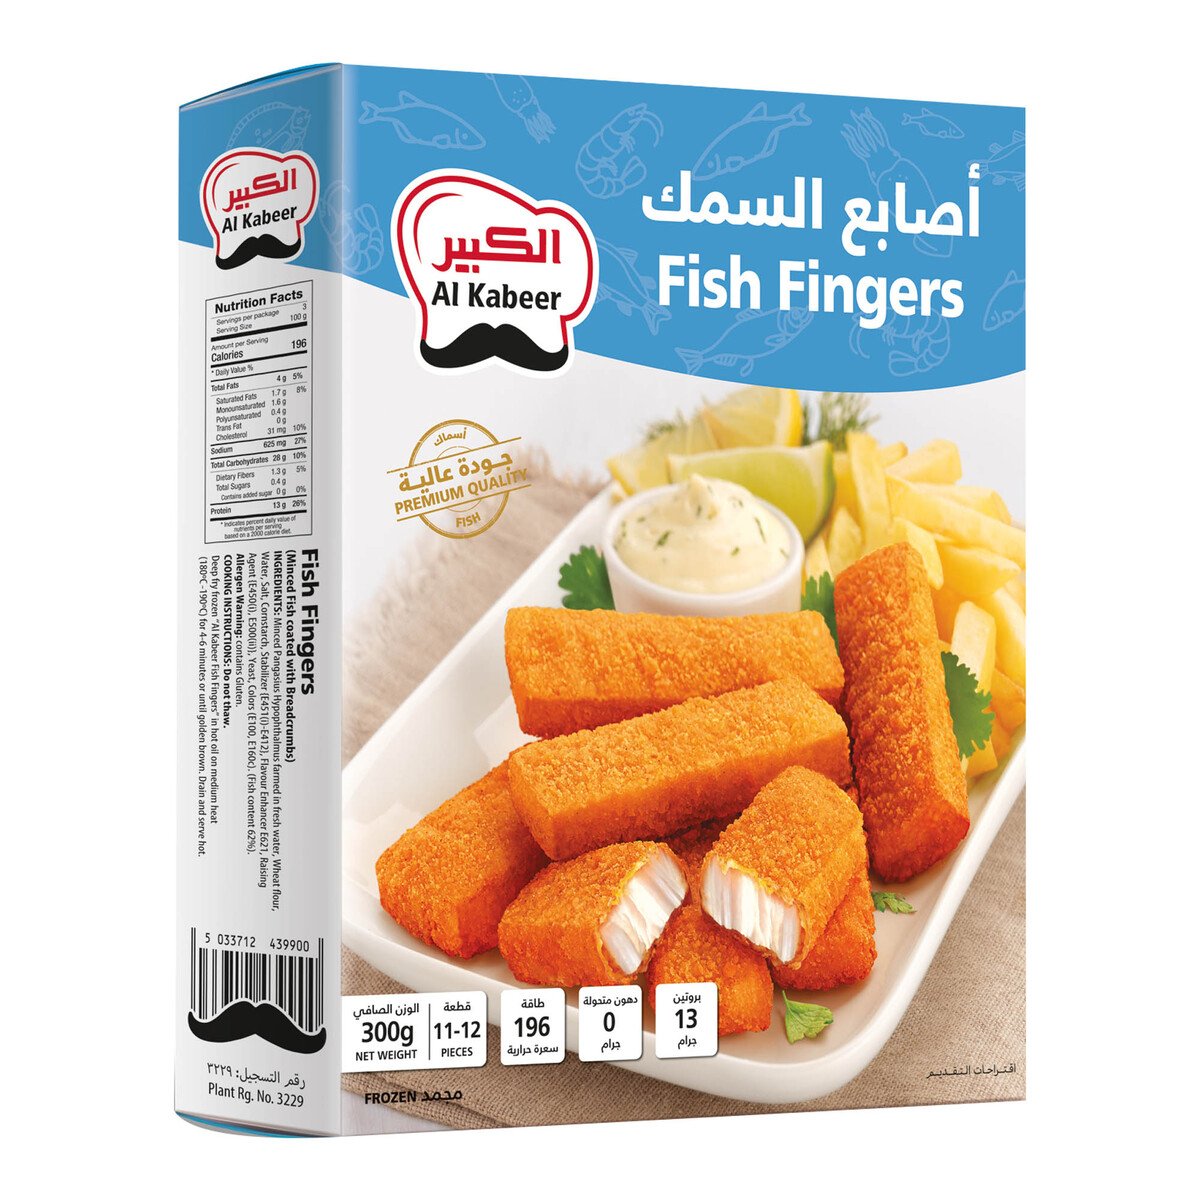 اشتري قم بشراء الكبير أصابع السمك مجمدة 300 جم Online at Best Price من الموقع - من لولو هايبر ماركت Fish Fingers & Steak في السعودية